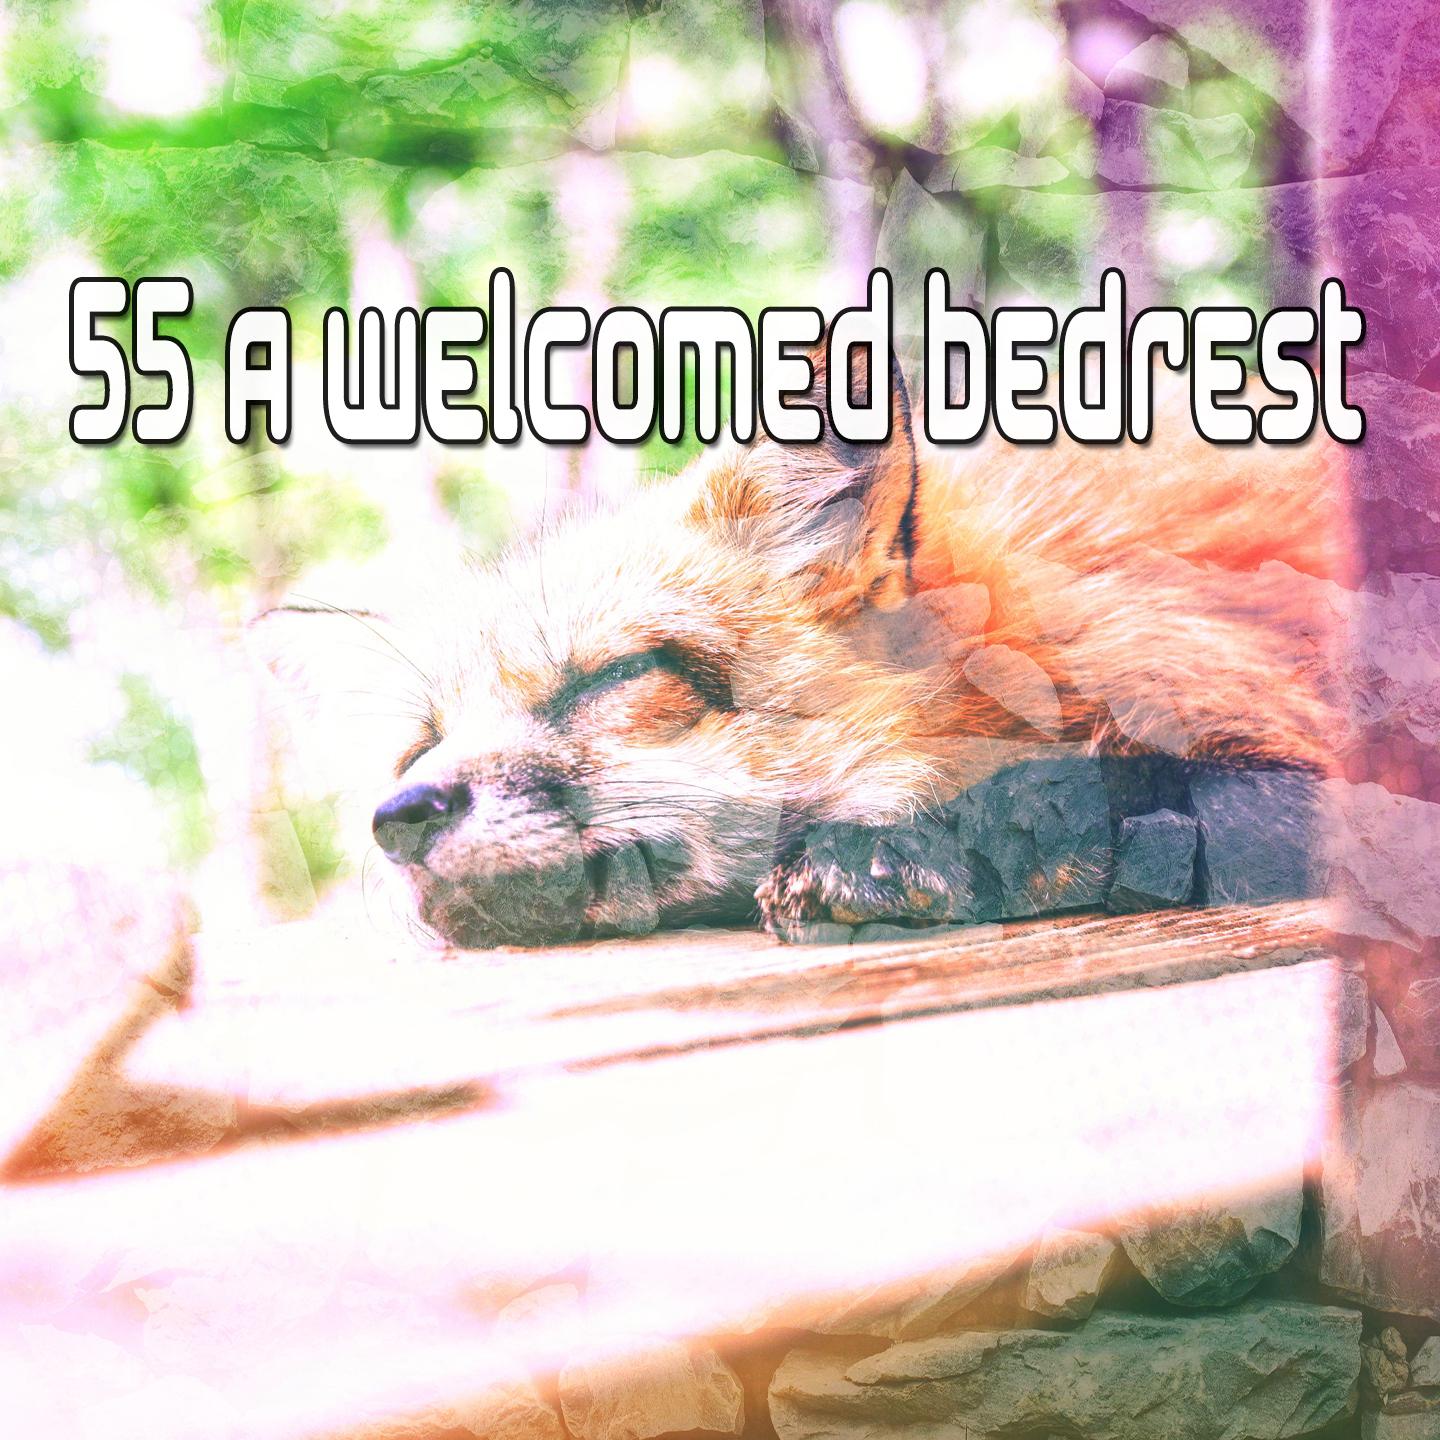 55 A Welcomed Bedrest